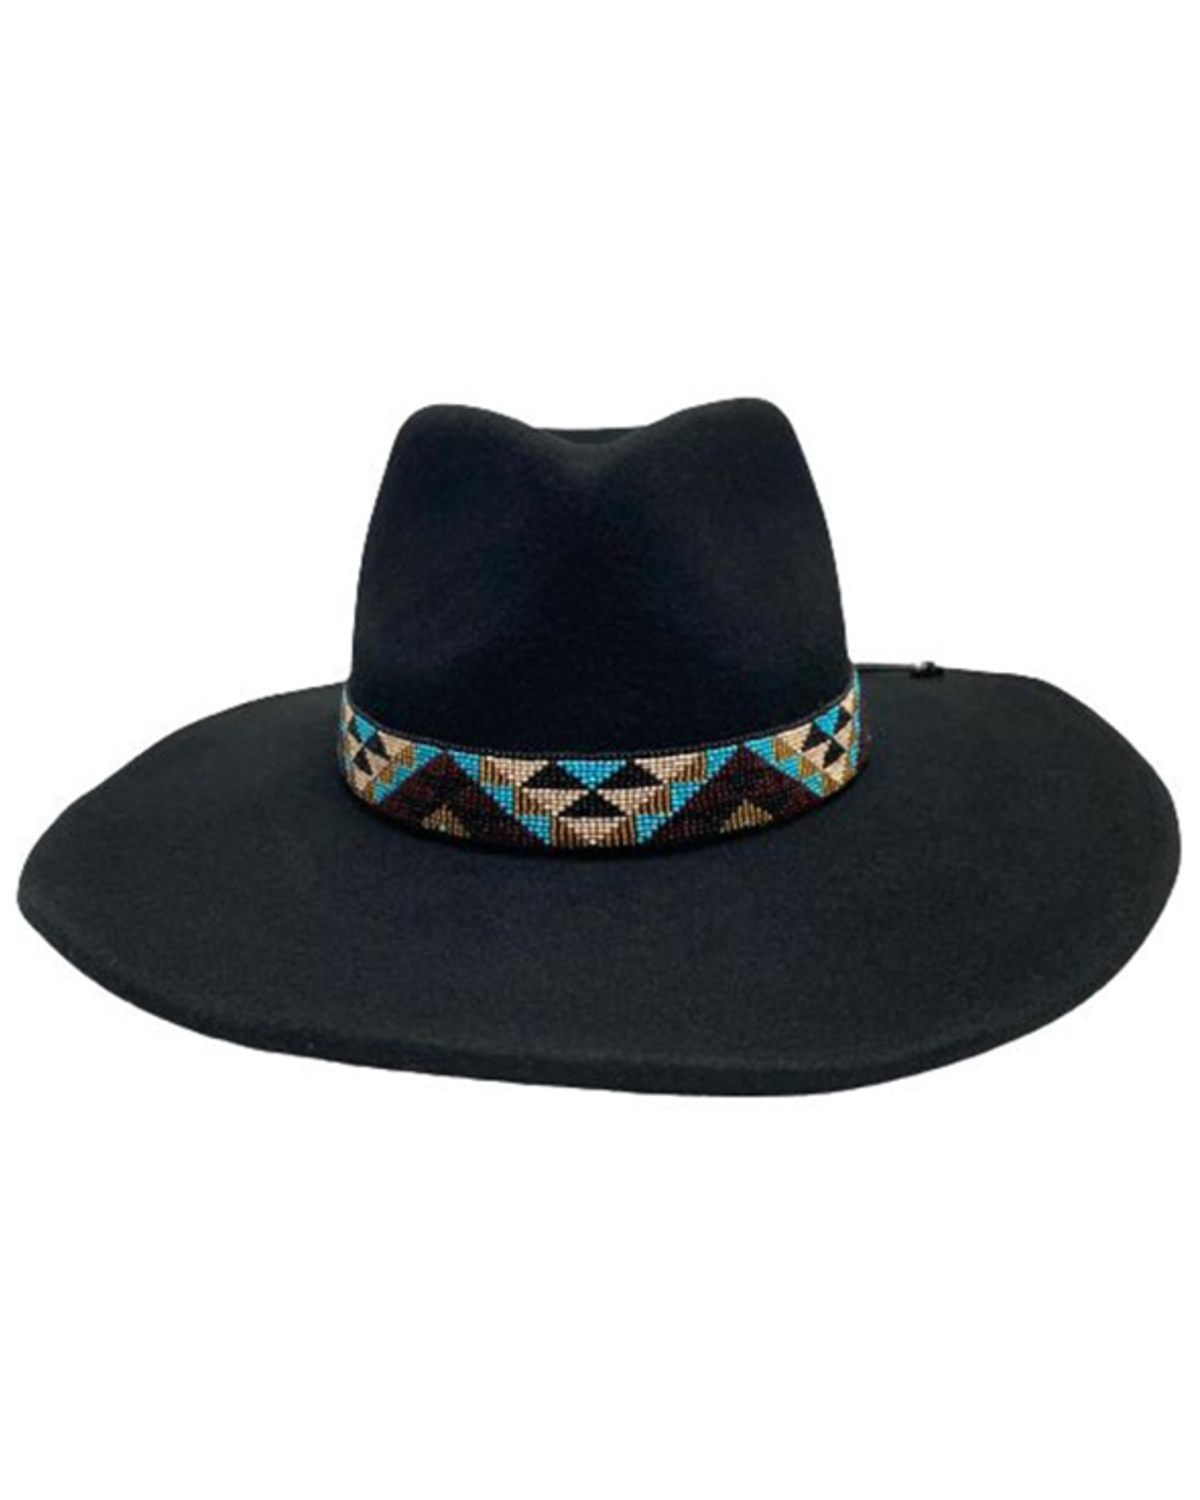 Nikki Beach Women's Mirador Wool Western Fashion Hat